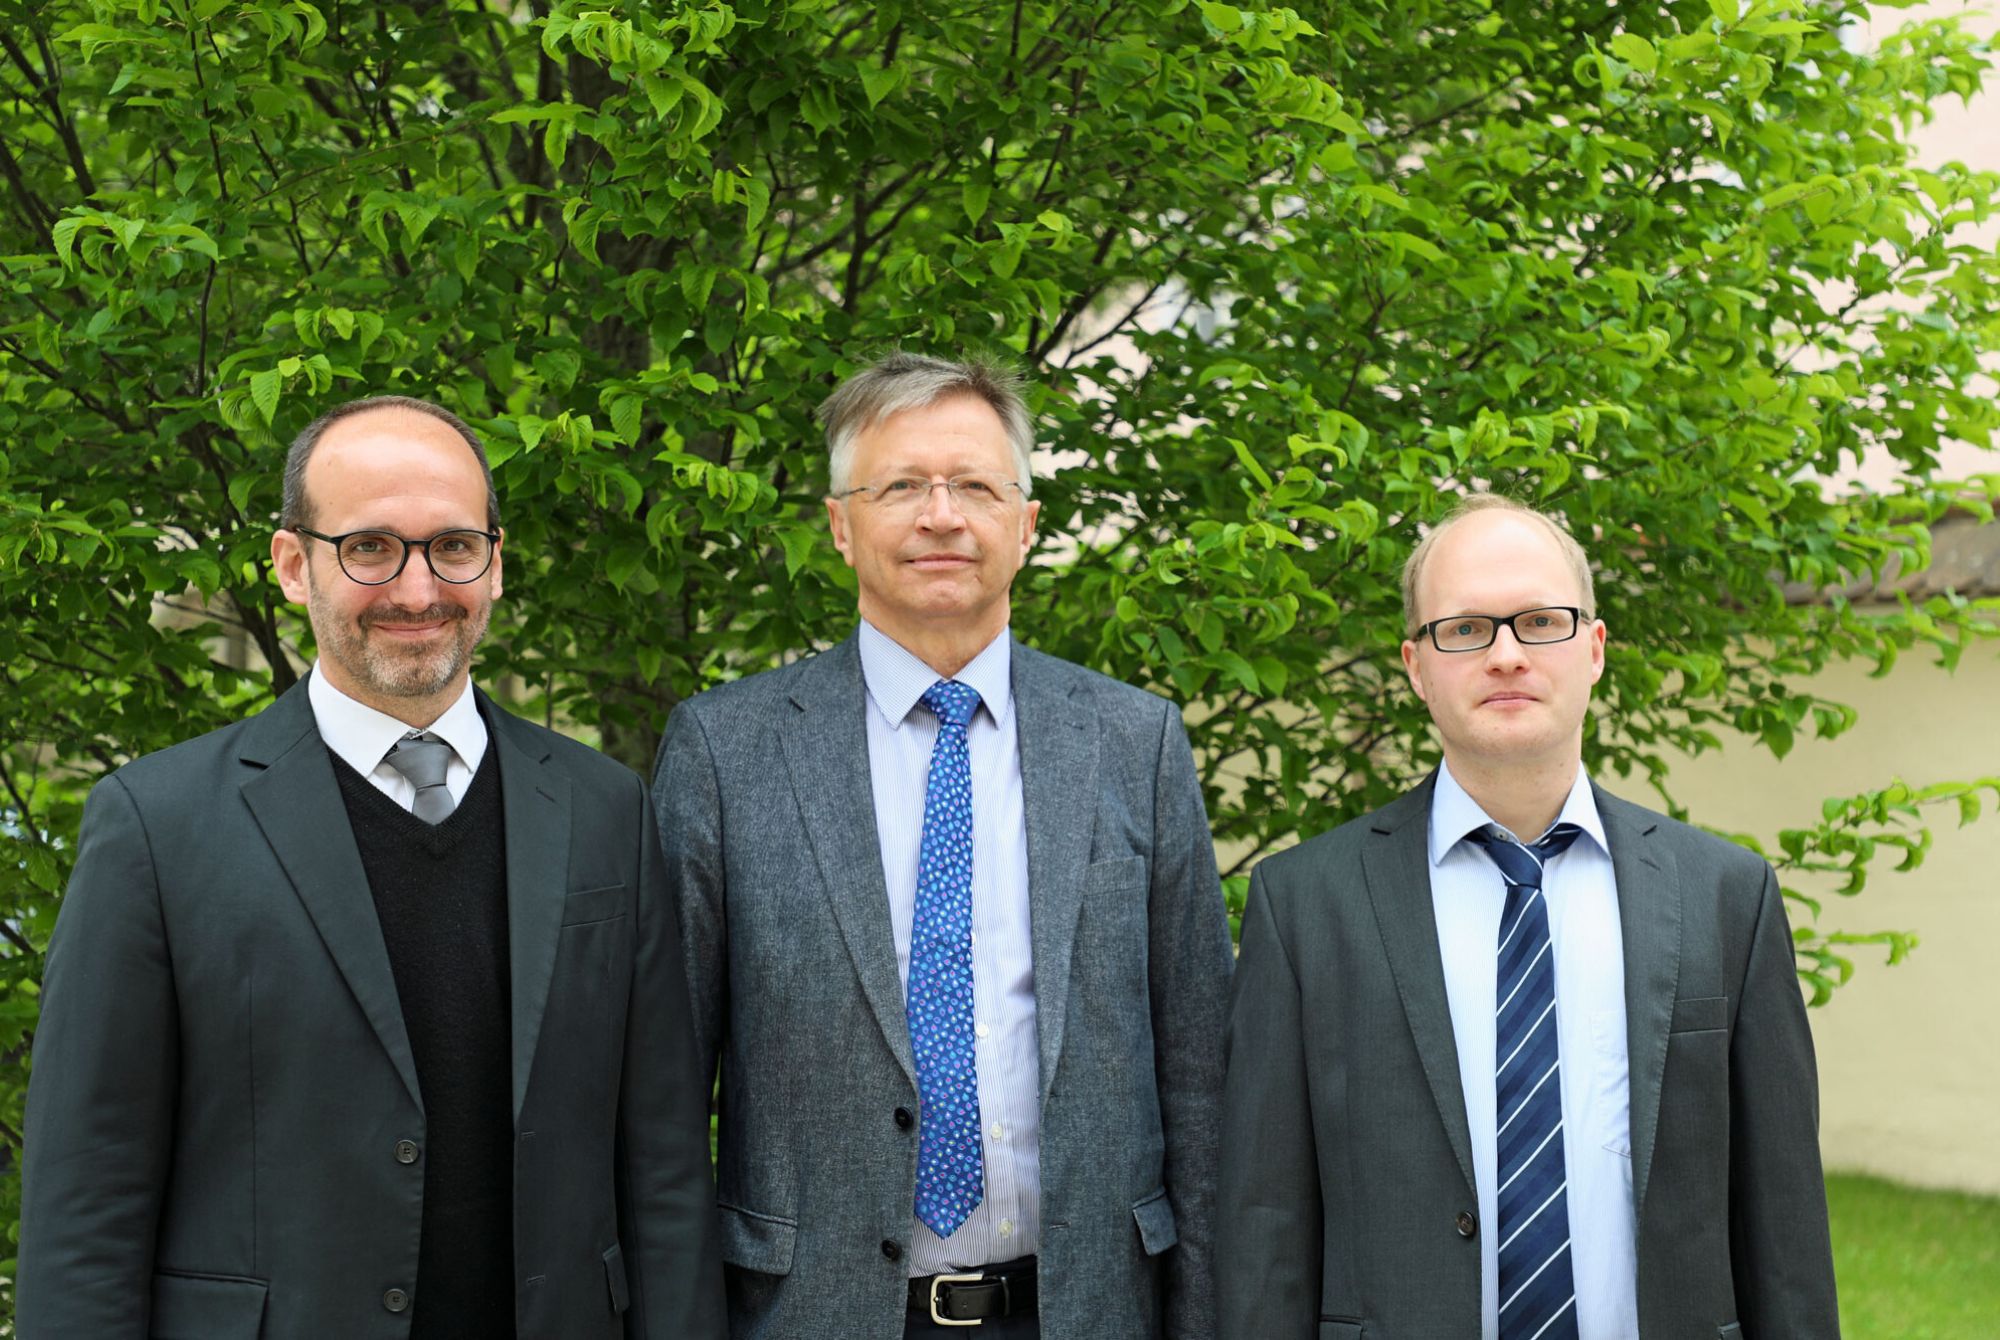 Domorganist Prof. Franz Josef Stoiber, Rektor der HfKM, mit den beiden frisch an die Hochschule berufenen Professoren